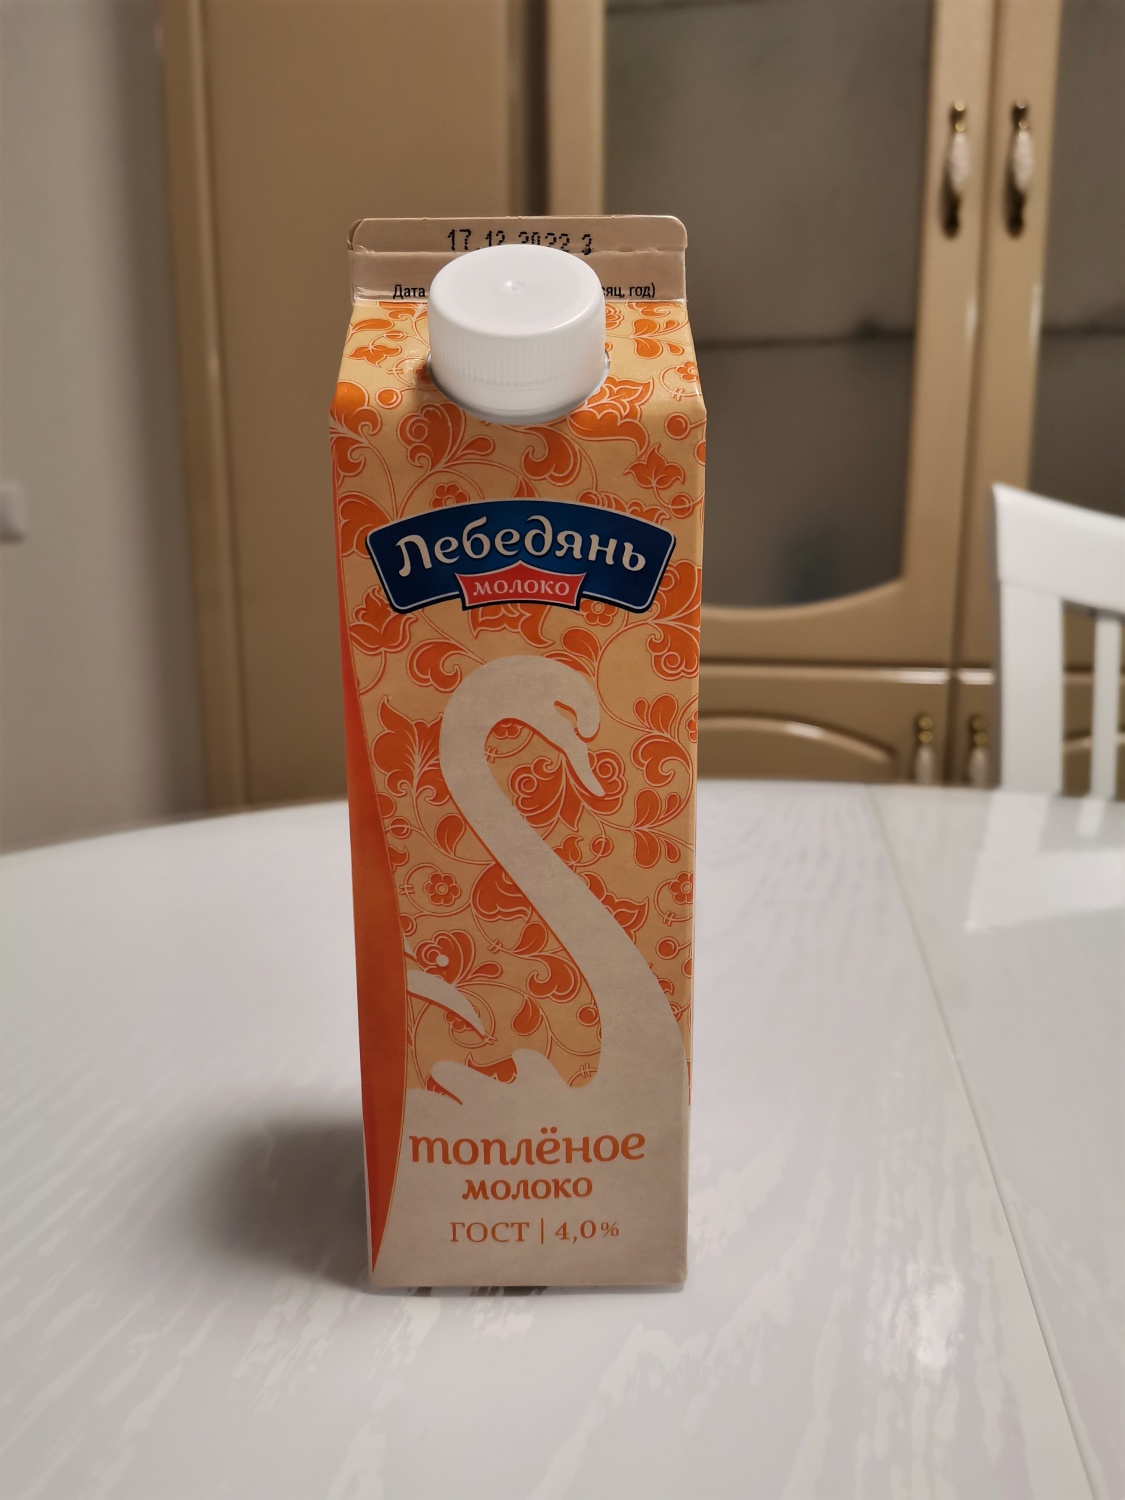 Топленое молоко в русской печи как сделать